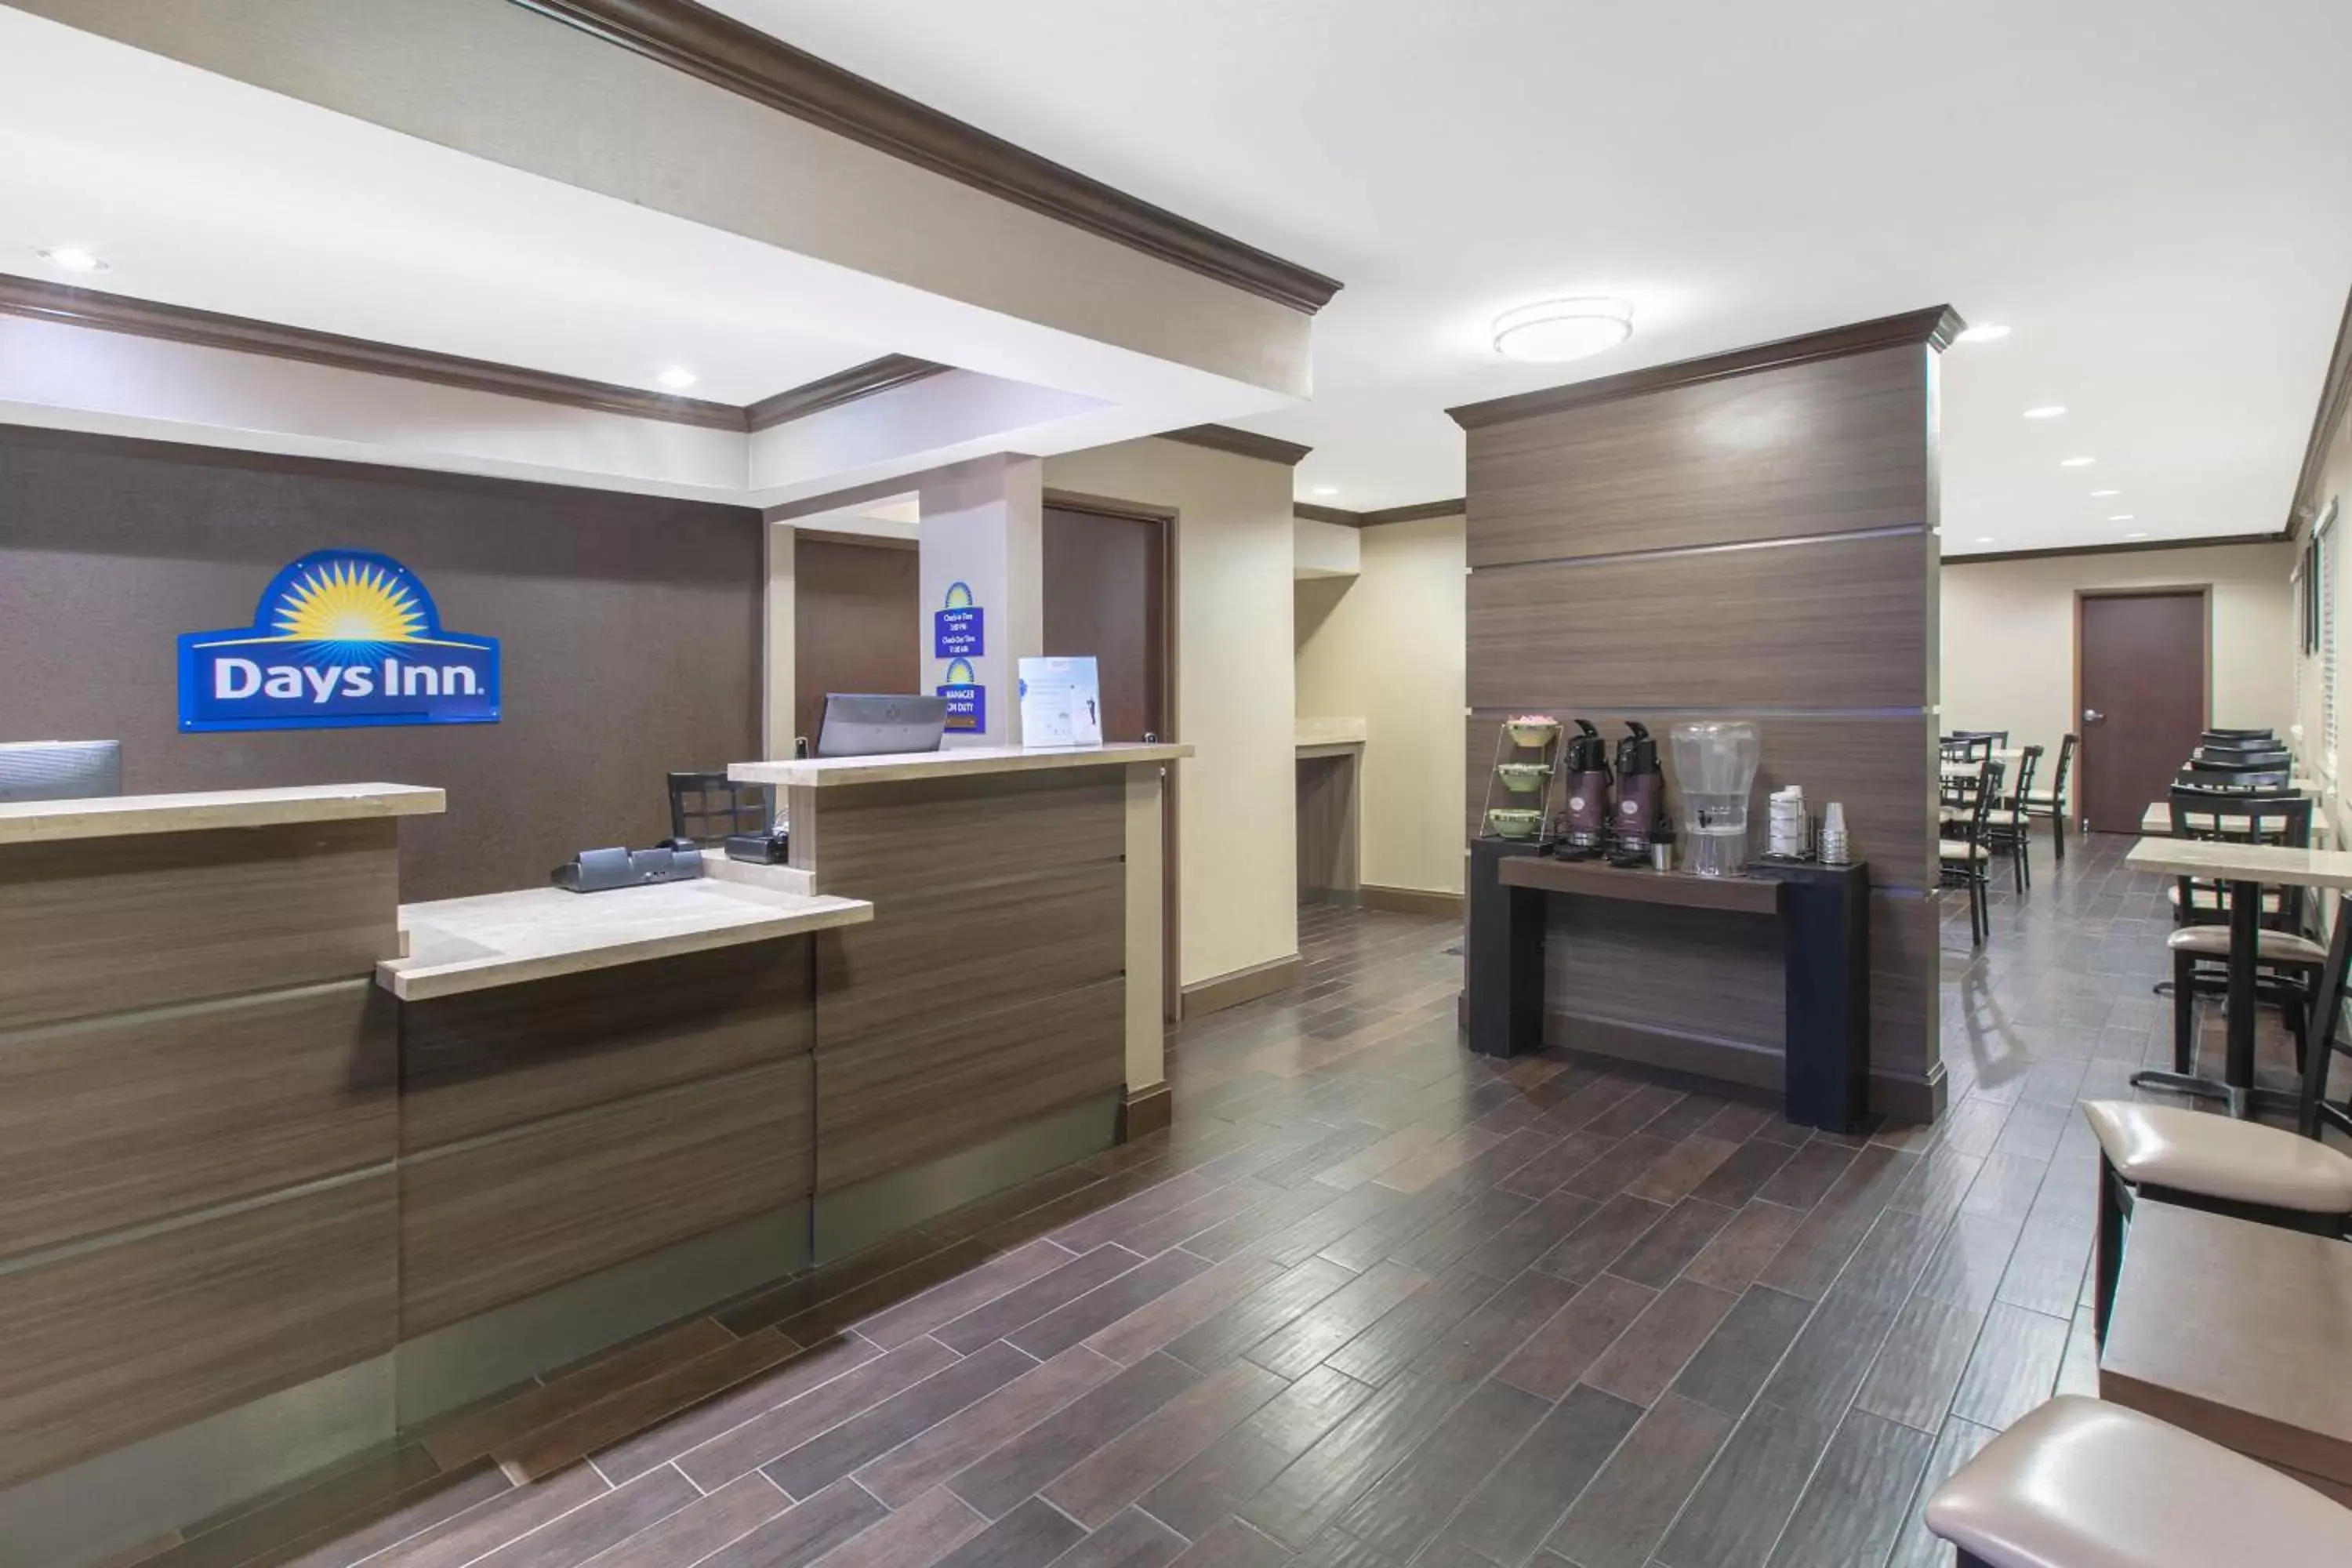 Lobby or reception, Lobby/Reception in Days Inn & Suites by Wyndham Arlington Near Six Flags